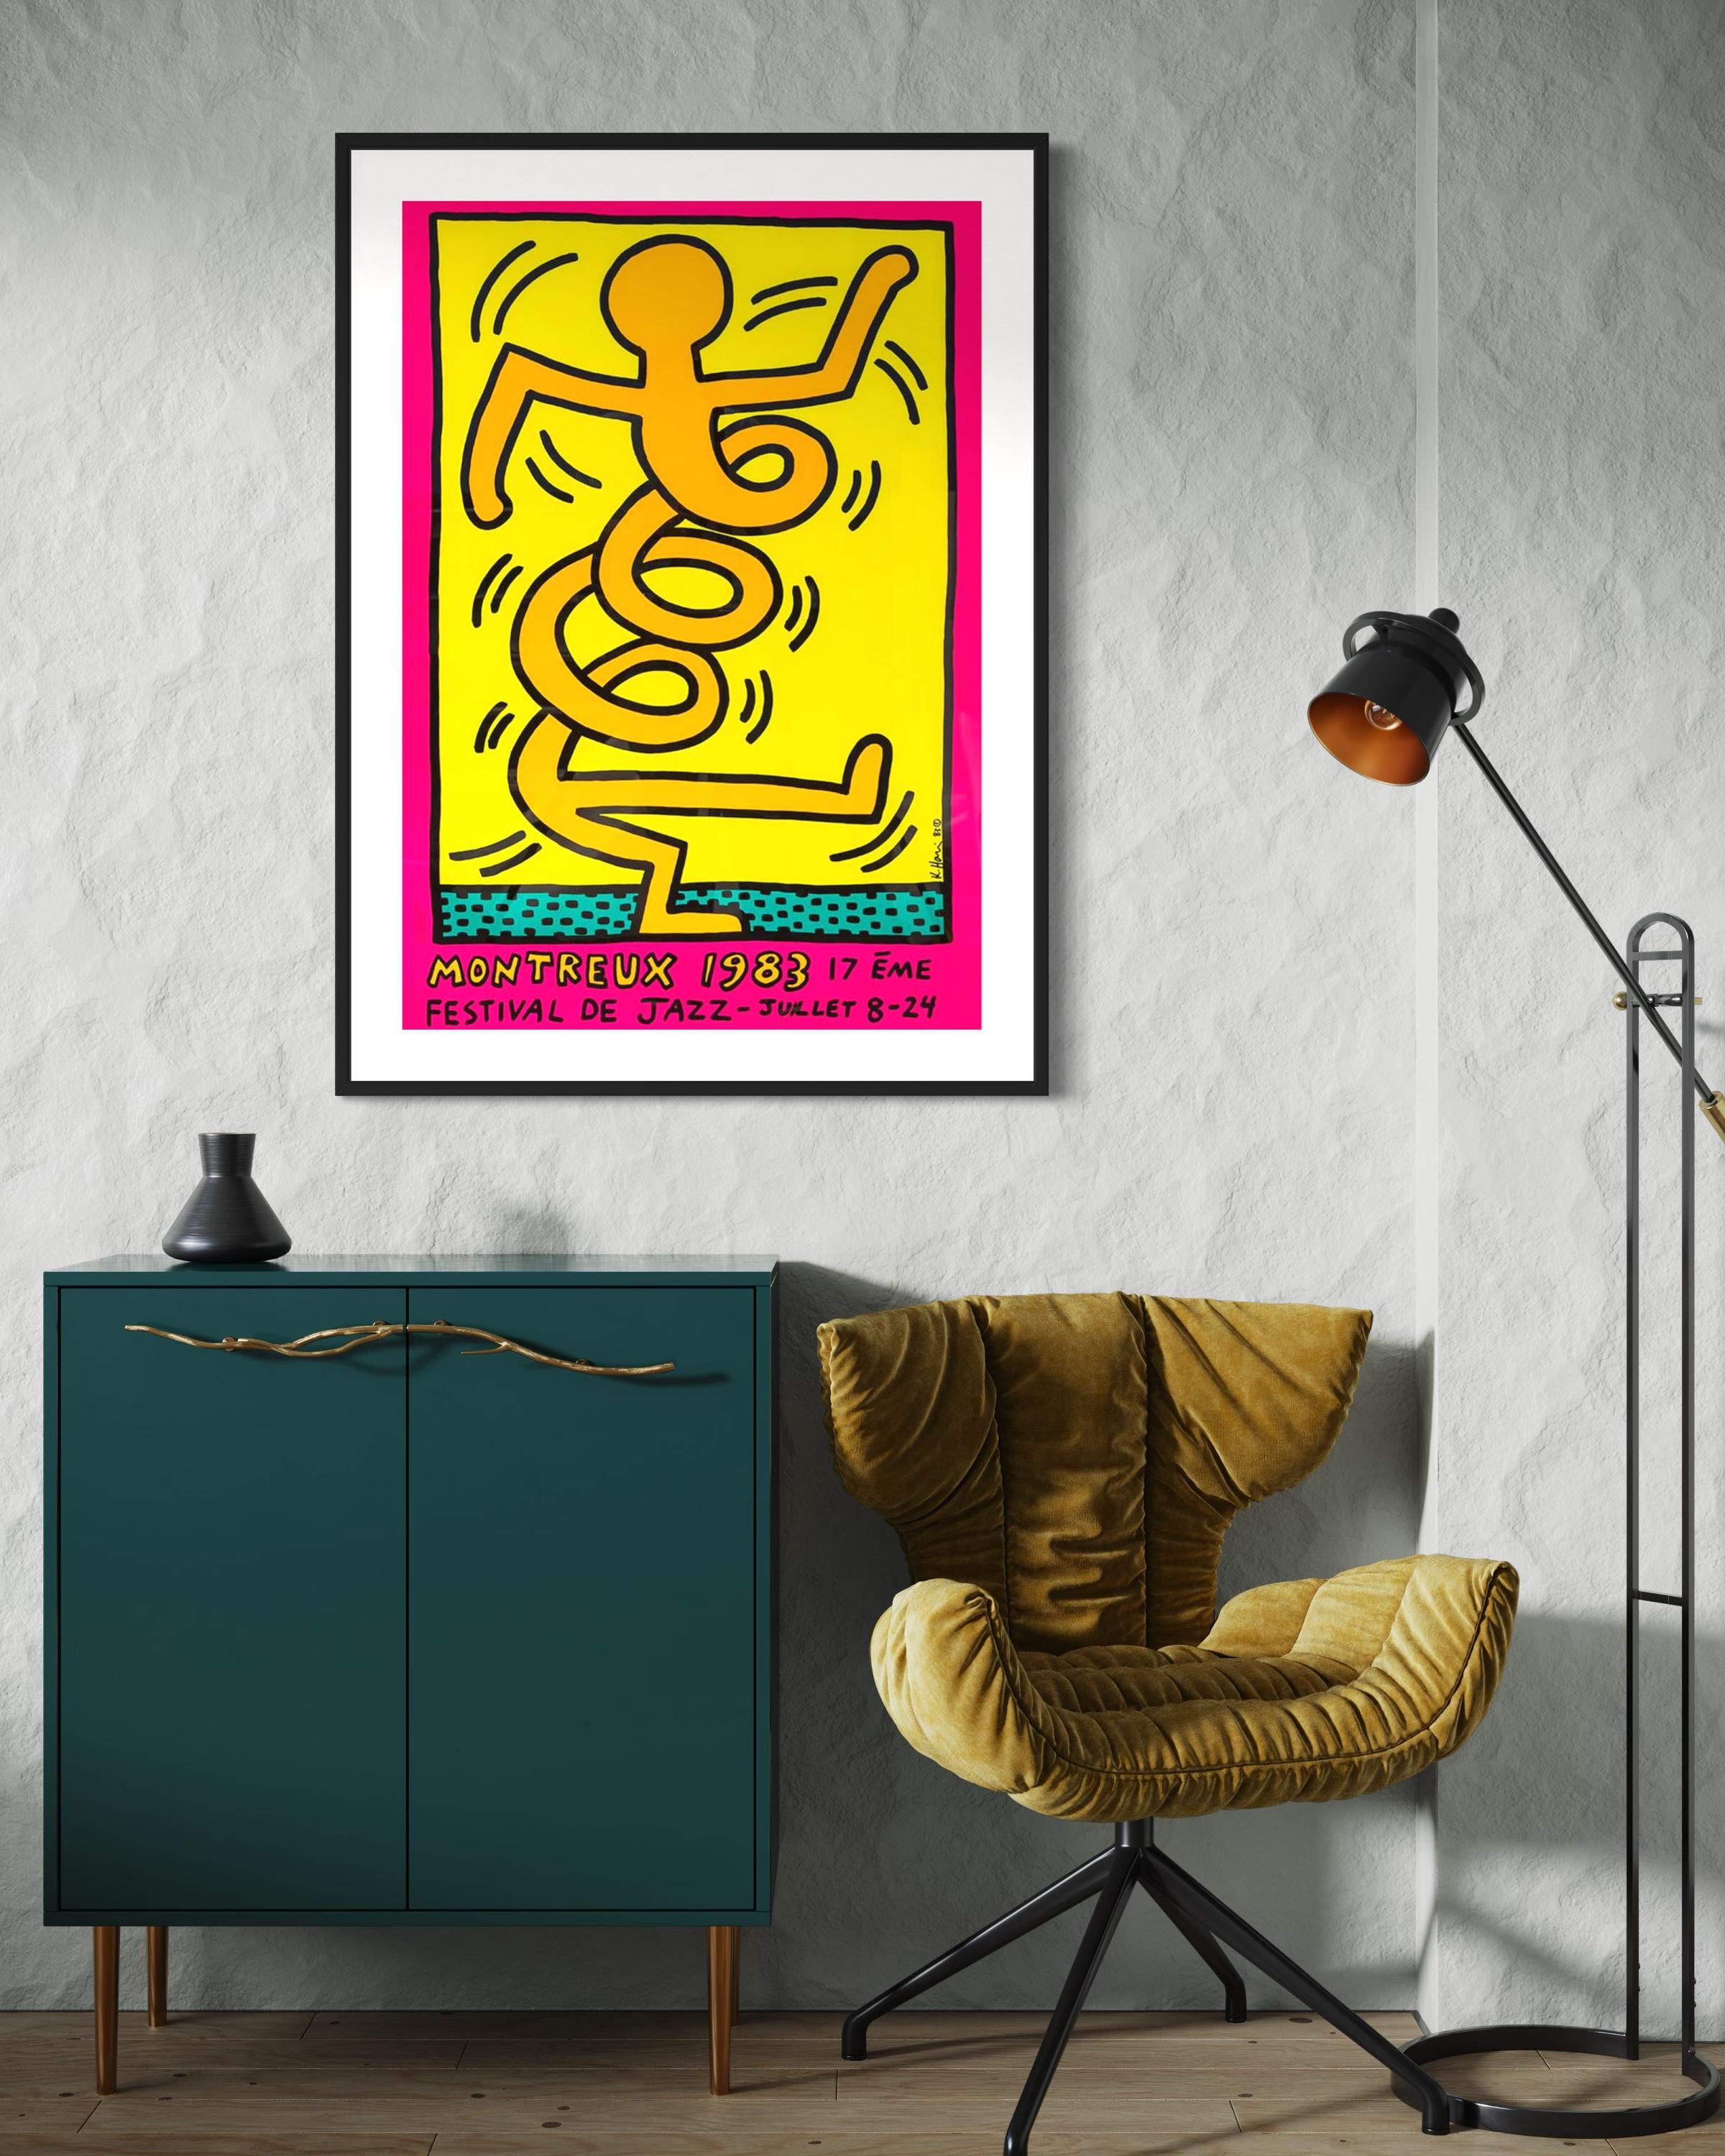 Titel: Montreux Jazz Festival 1983 von Keith Haring 1986

Medium: Farbsiebdruck auf halbmatt gestrichenem 250-Gramm-Papier

Drucker: Albin Uldry

Größe: 70 x 100 cm (27,6 x 39,4 Zoll)

Unterschrift: Platte signiert von Keith Haring 

Offene